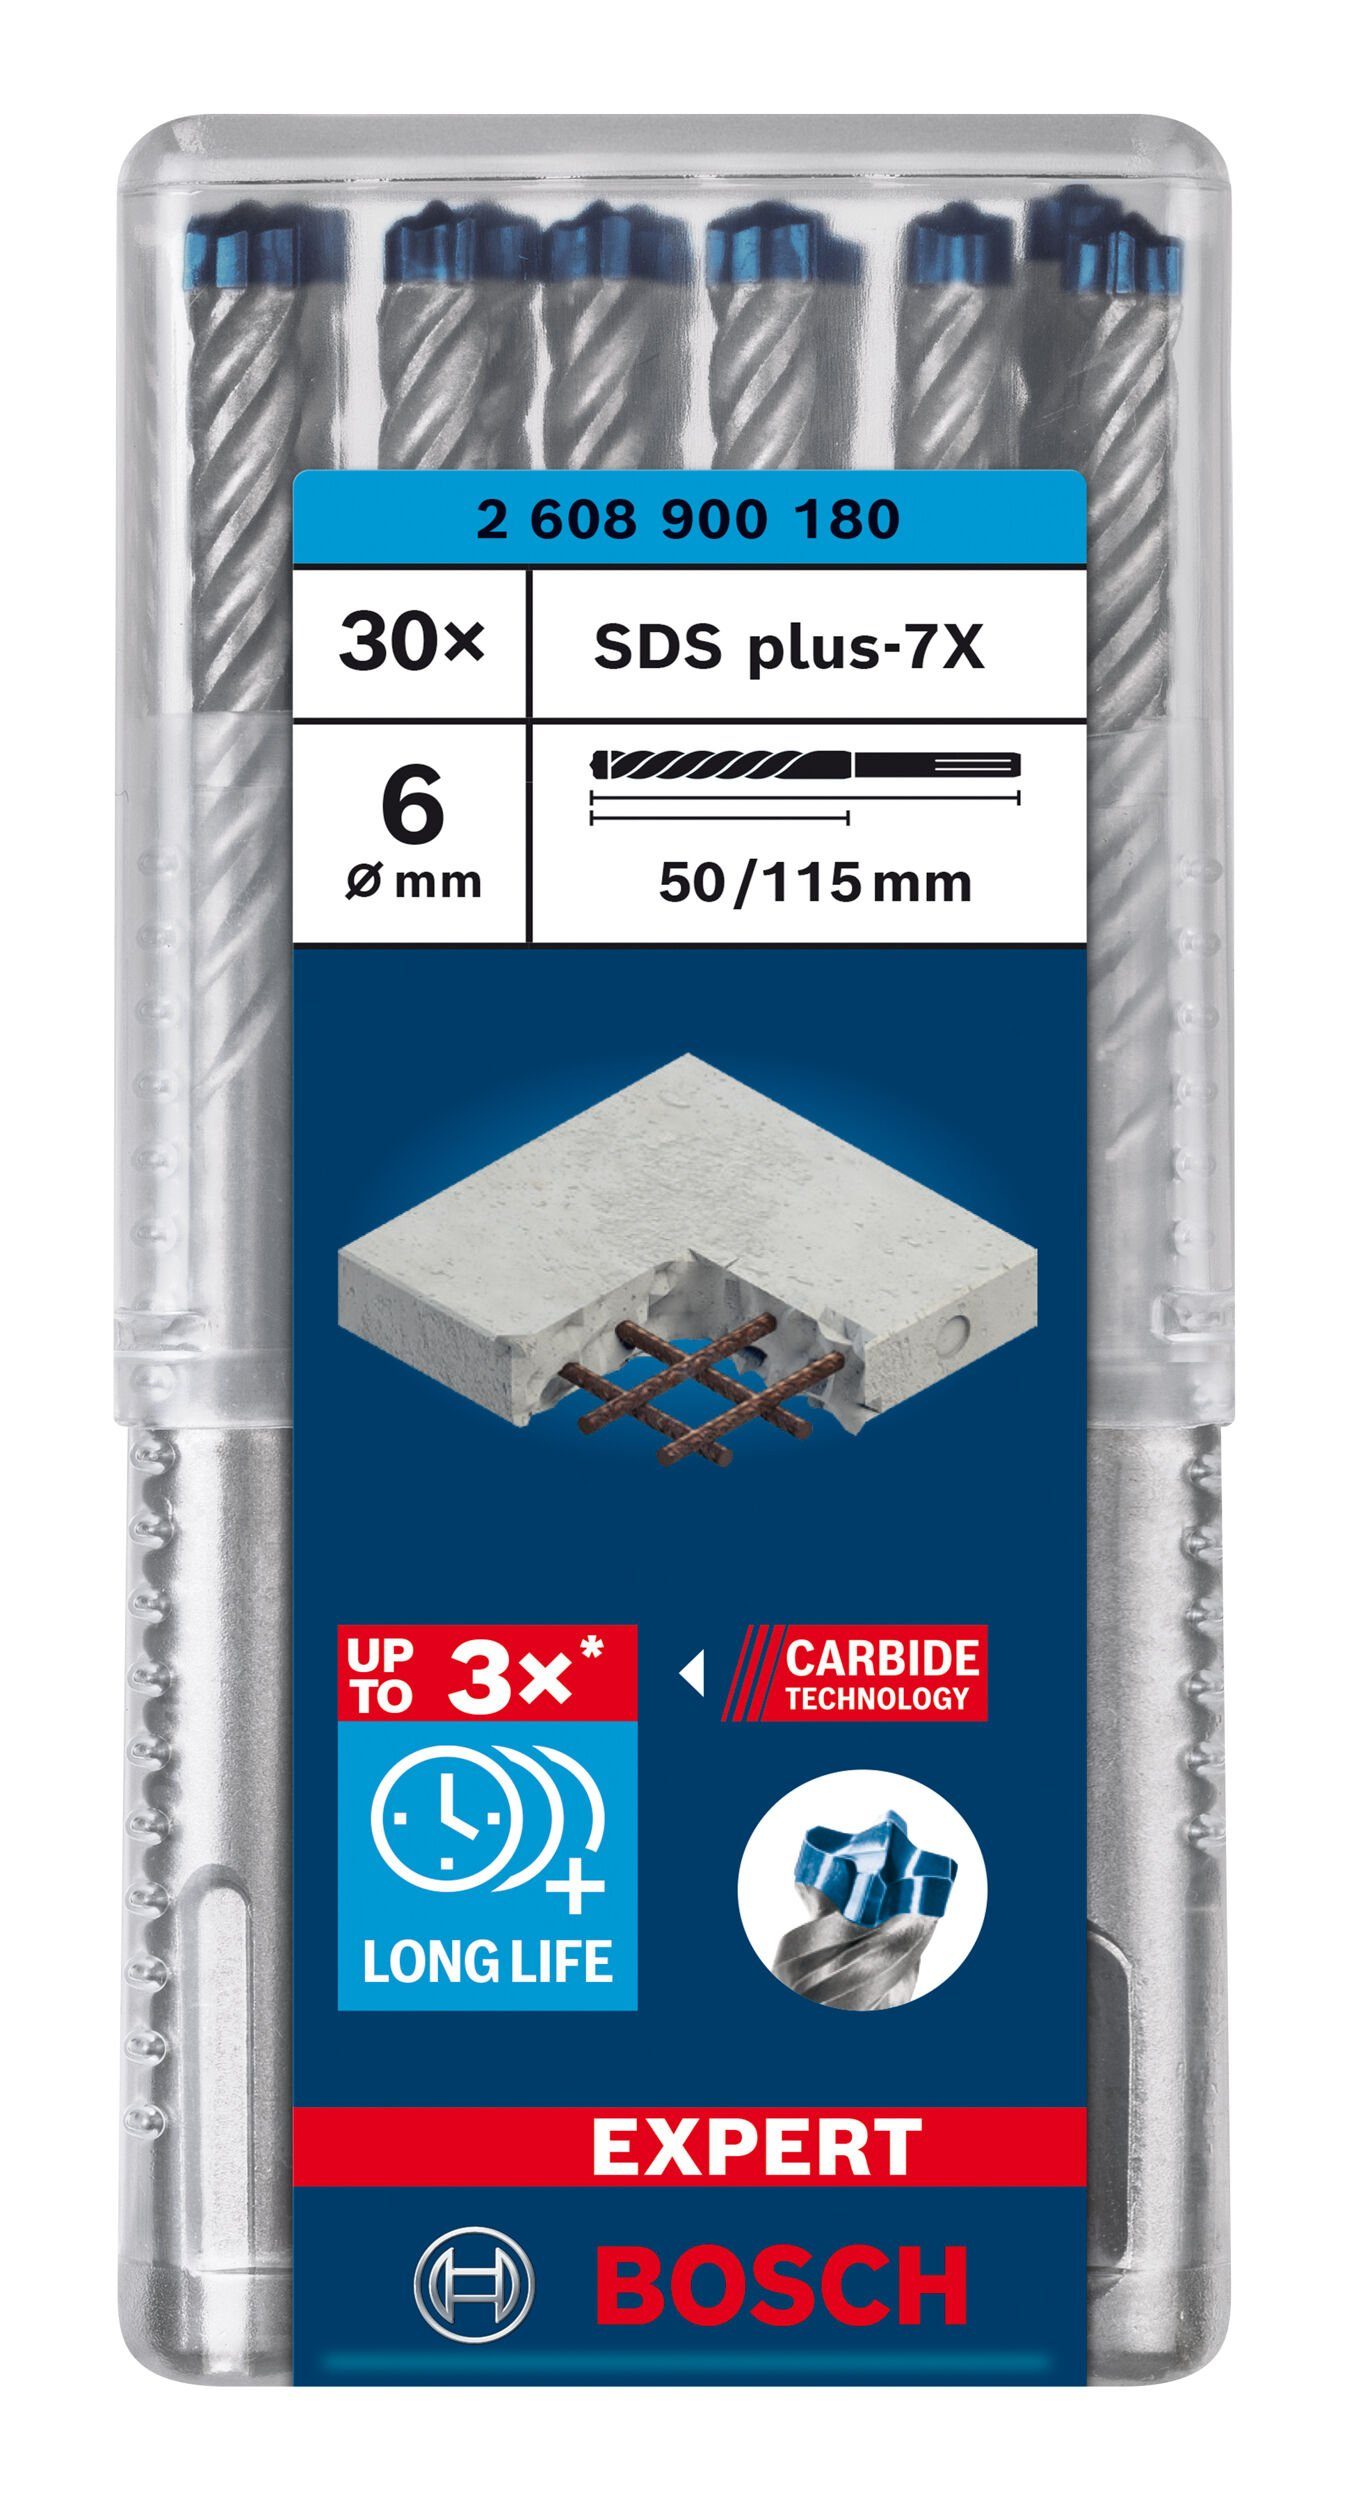 BOSCH Universalbohrer Expert SDS (30 x - mm x 115 Stück), 6 30er-Pack plus-7X, Hammerbohrer 50 